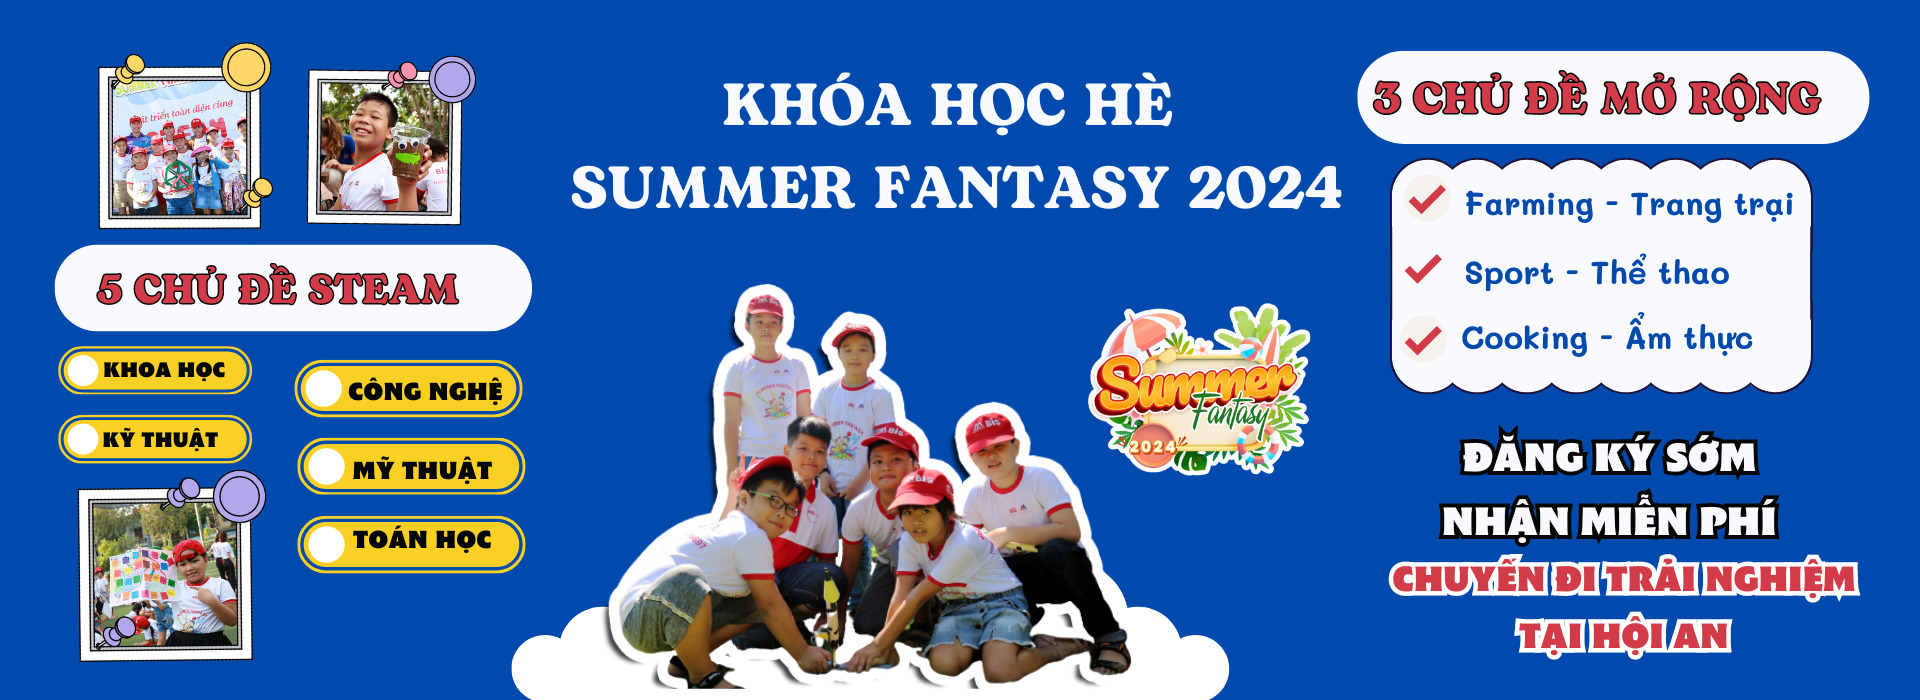 Khóa học hè Summer Fantasy 2024